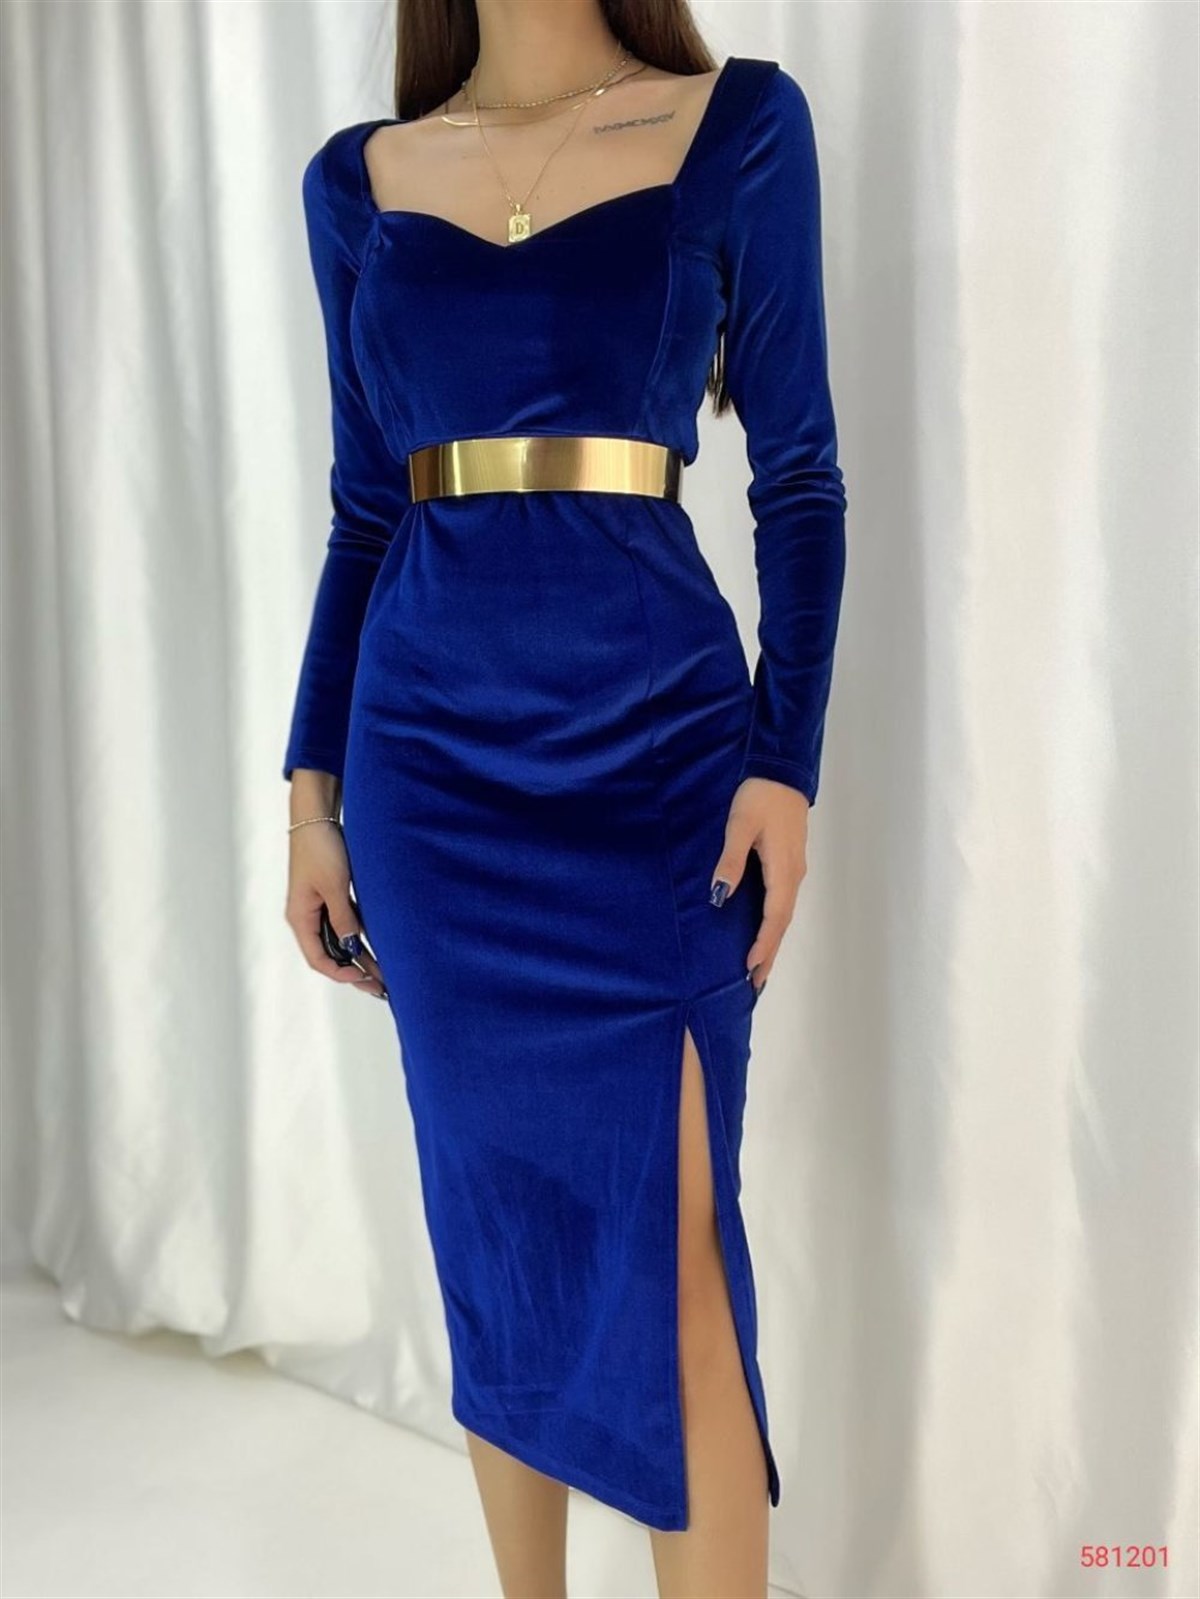 Fery Gold Kemer Detay Yırtmaçlı  Kadife Elbise 581201 SAKS MAVİSİ